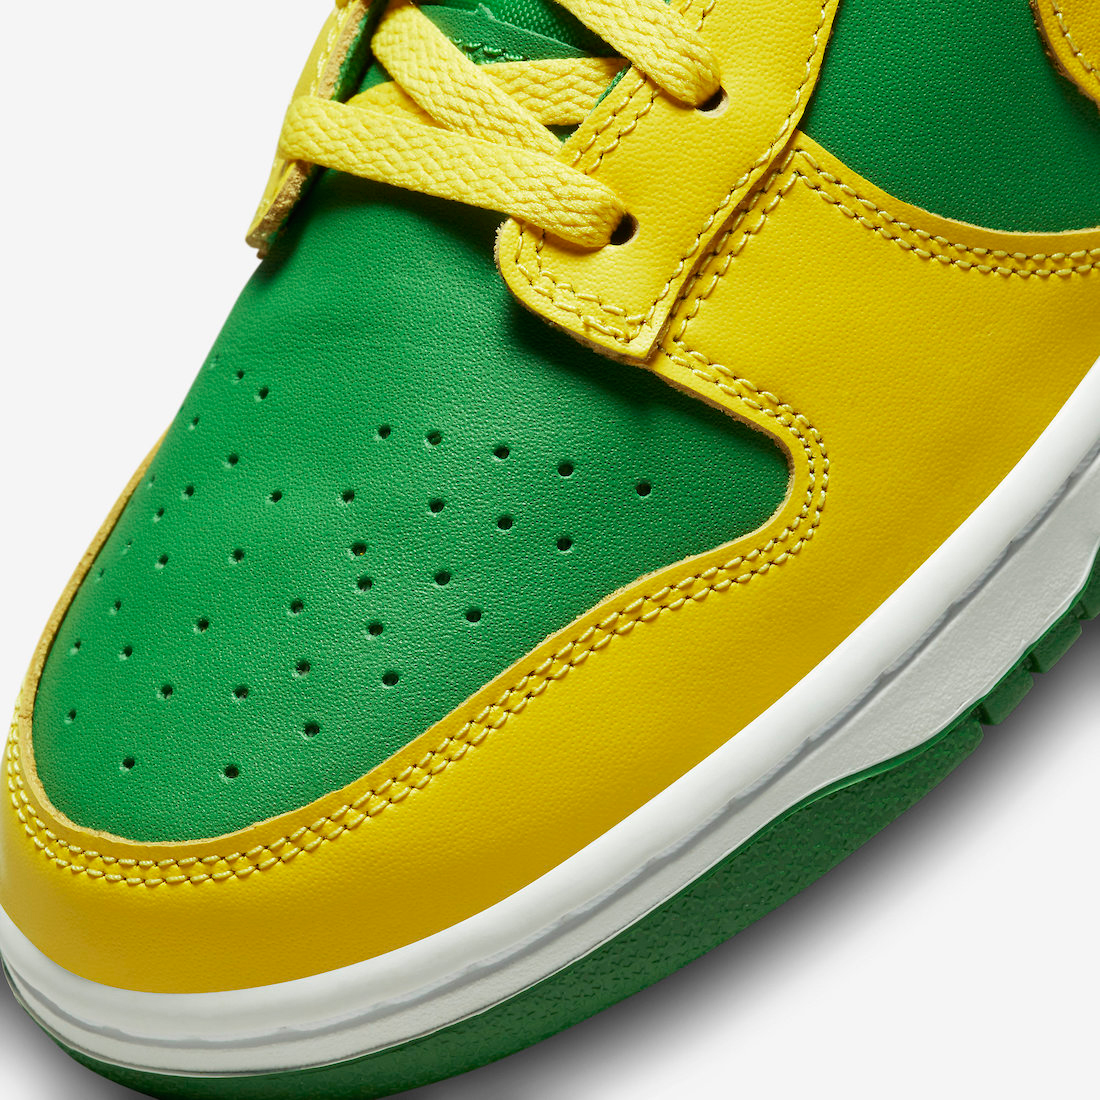 Nike-Dunk-Low-Reverse-Brazil-Apple-Green-Yellow-Strike-DV0833-300-Release-Date-7